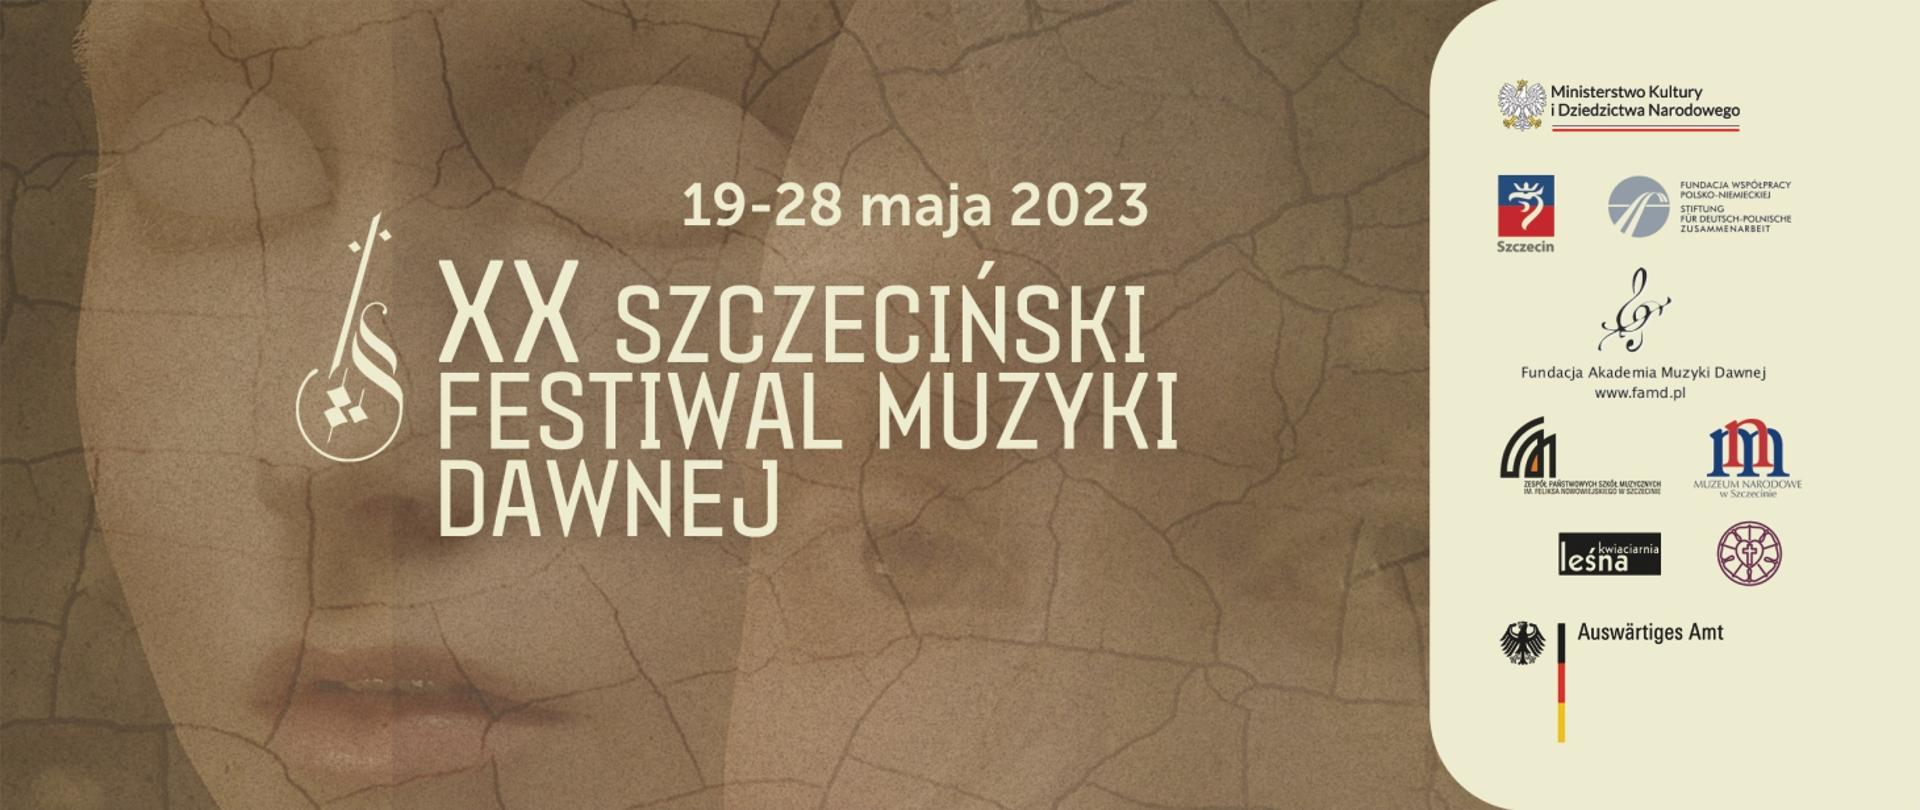 Grafika prezentuje napis: 19-28 maja 2023, XX Szczeciński Festiwal Muzyki Dawnej praz logotypy sponsorów